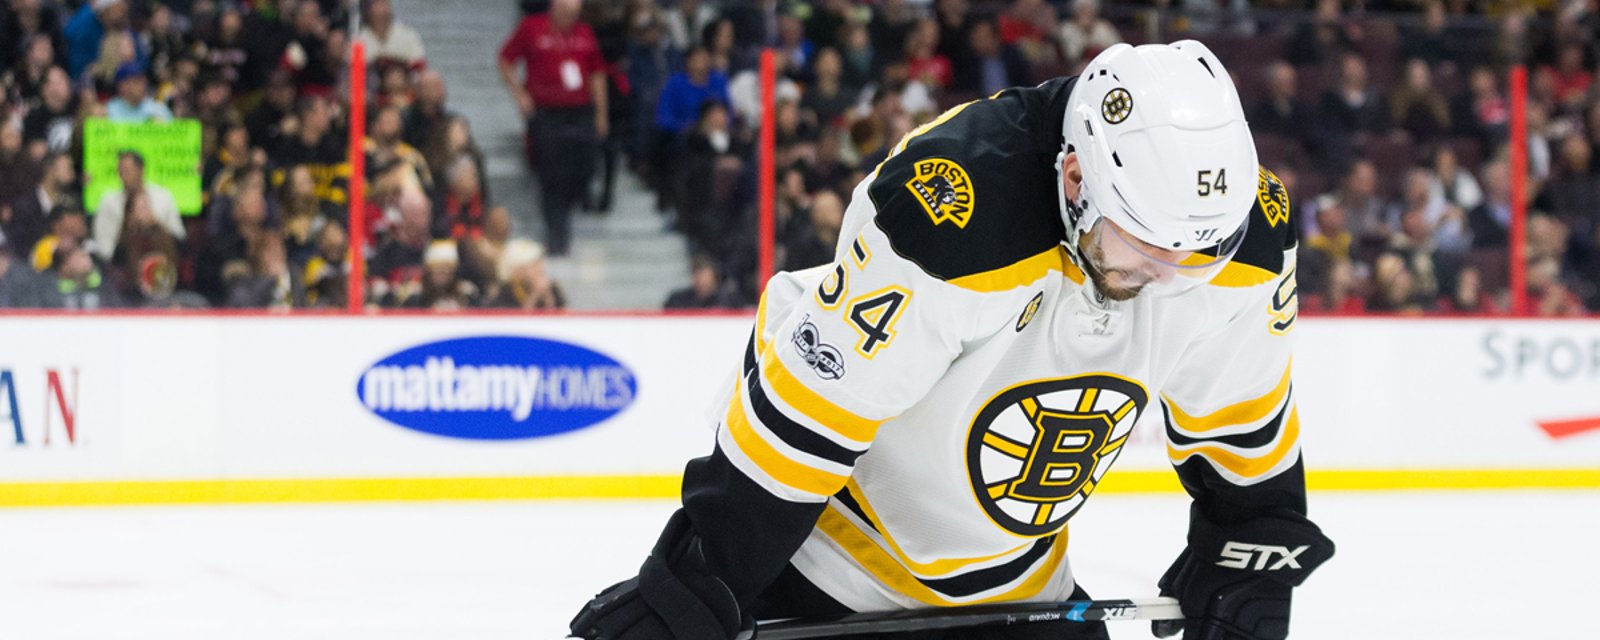 Breaking: Bruins make emergency recall on defense